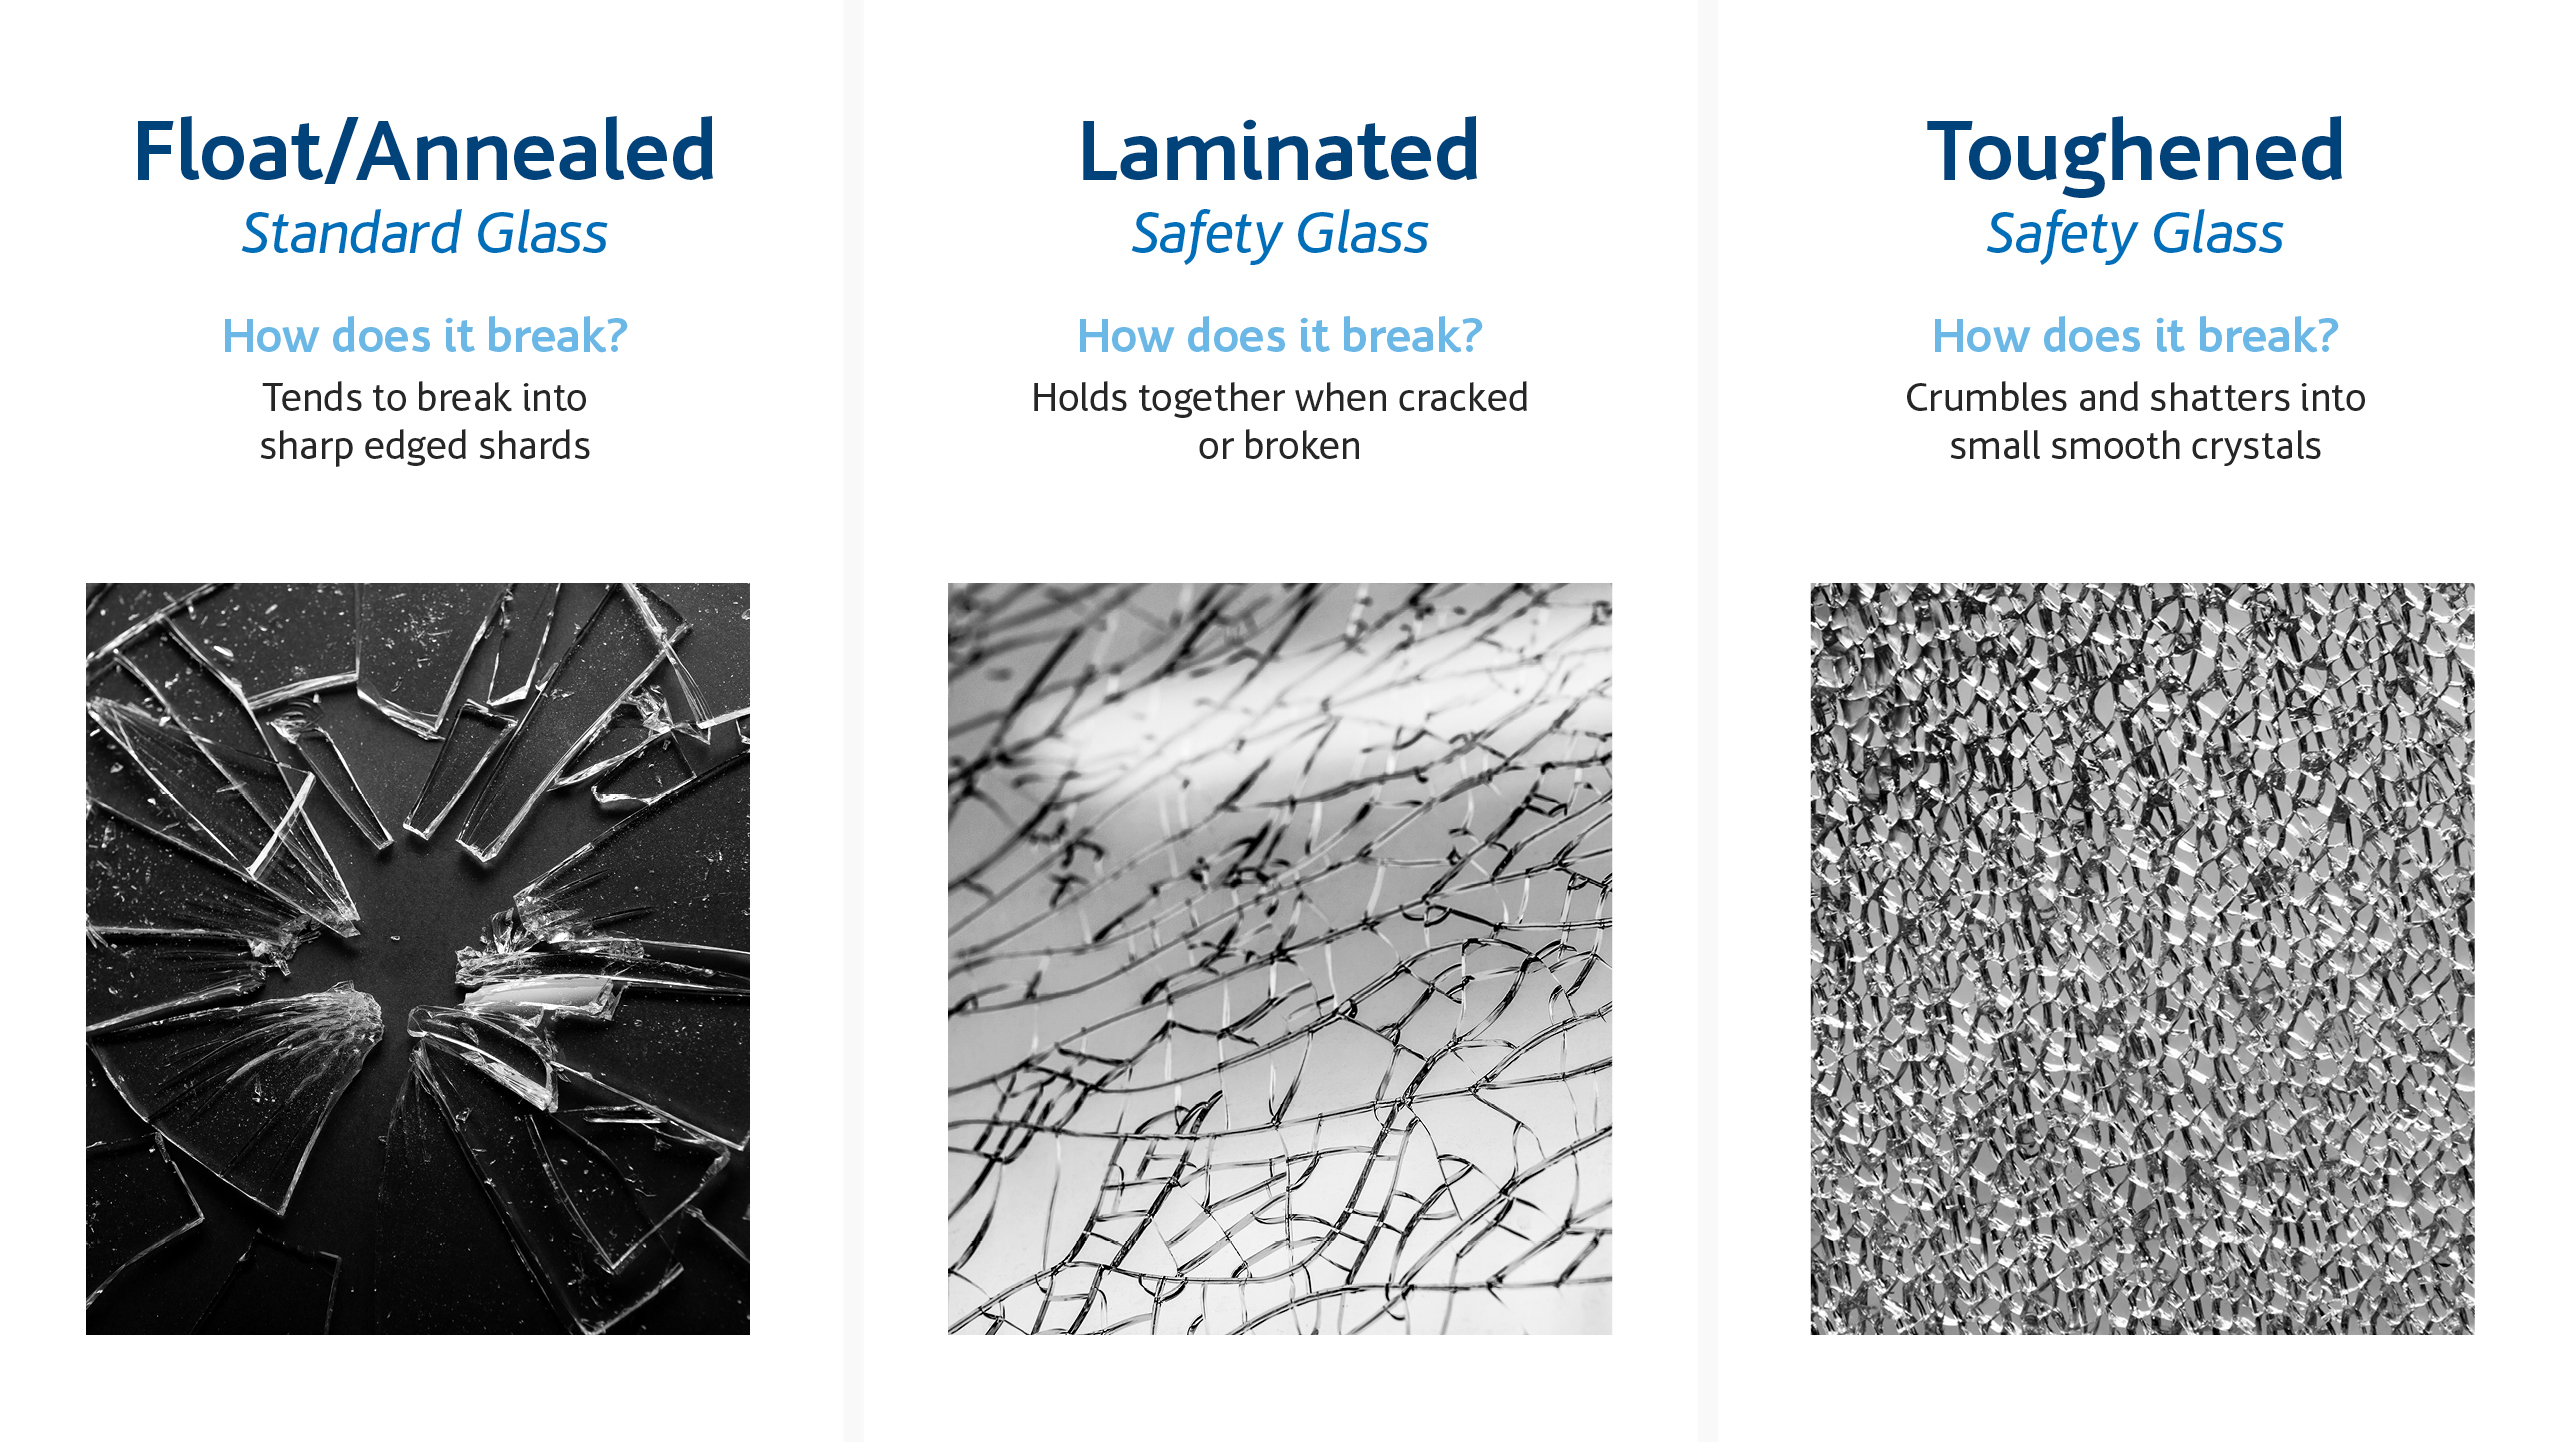 ¿Cuáles son los diferentes tipos de ruptura de vidrio?